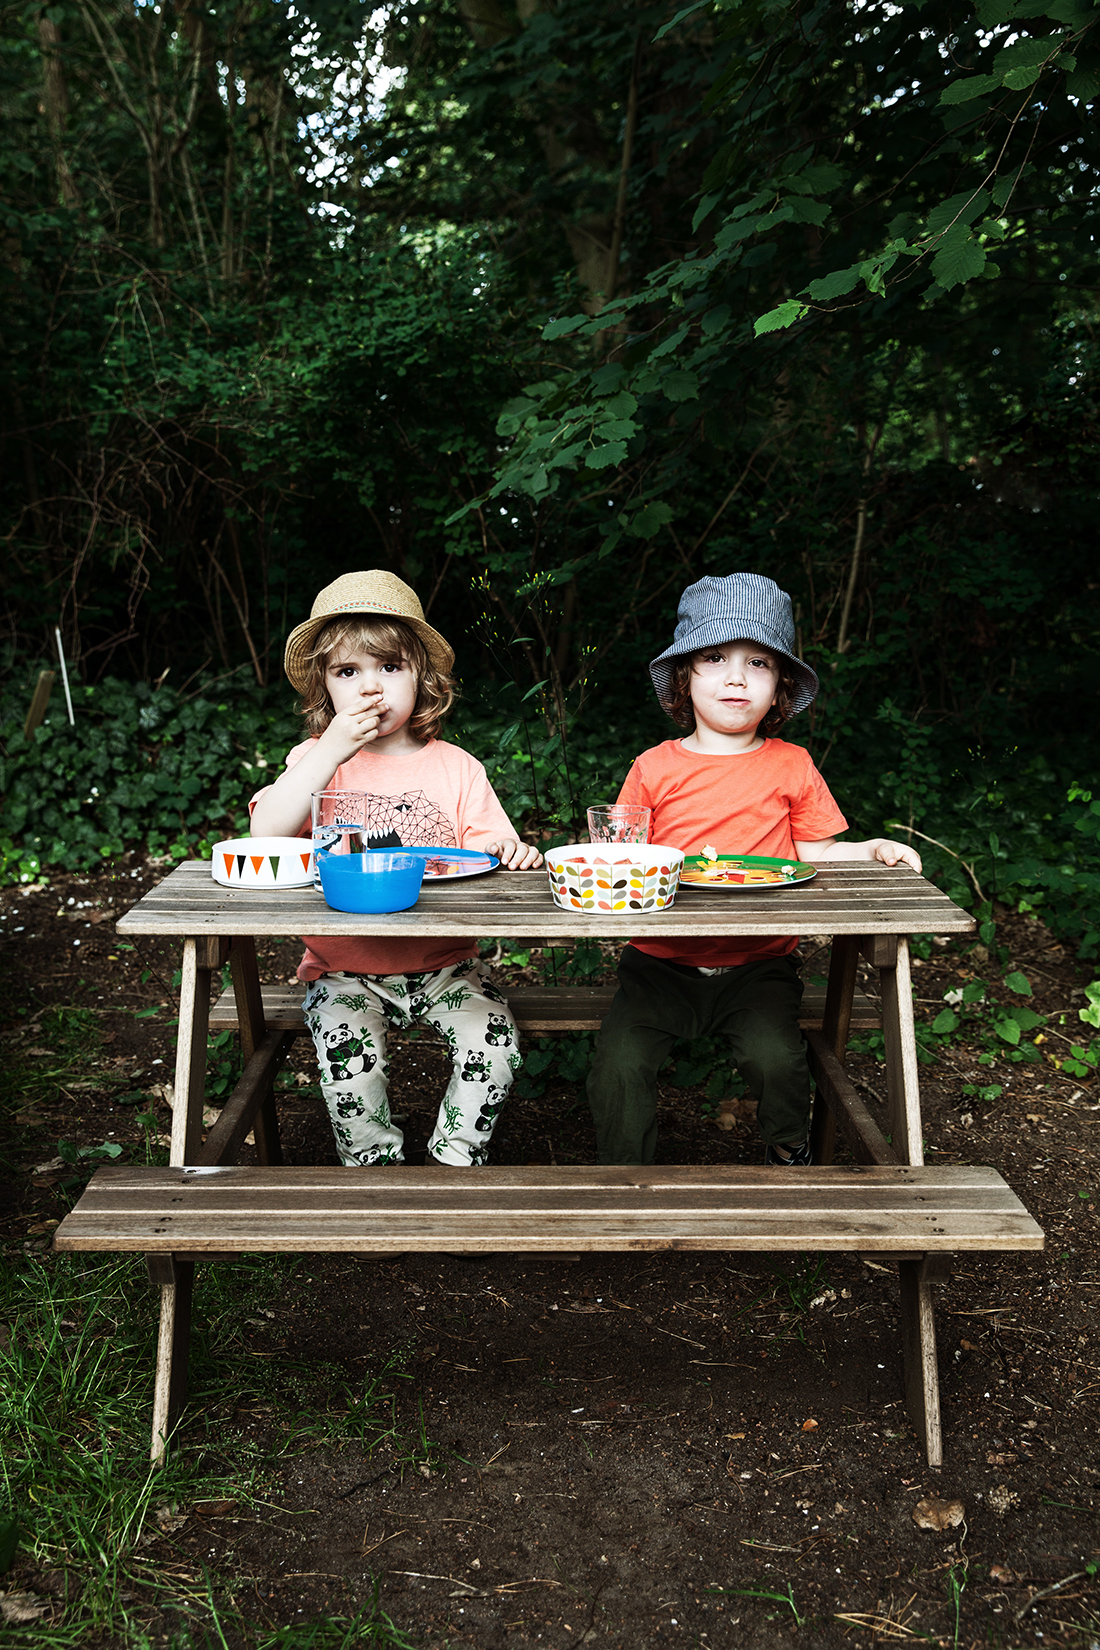 Zwei Jungen an Picknicktisch. Kinderportrait von der Kinderfotografin © Miriam Ellerbrake, Berlin